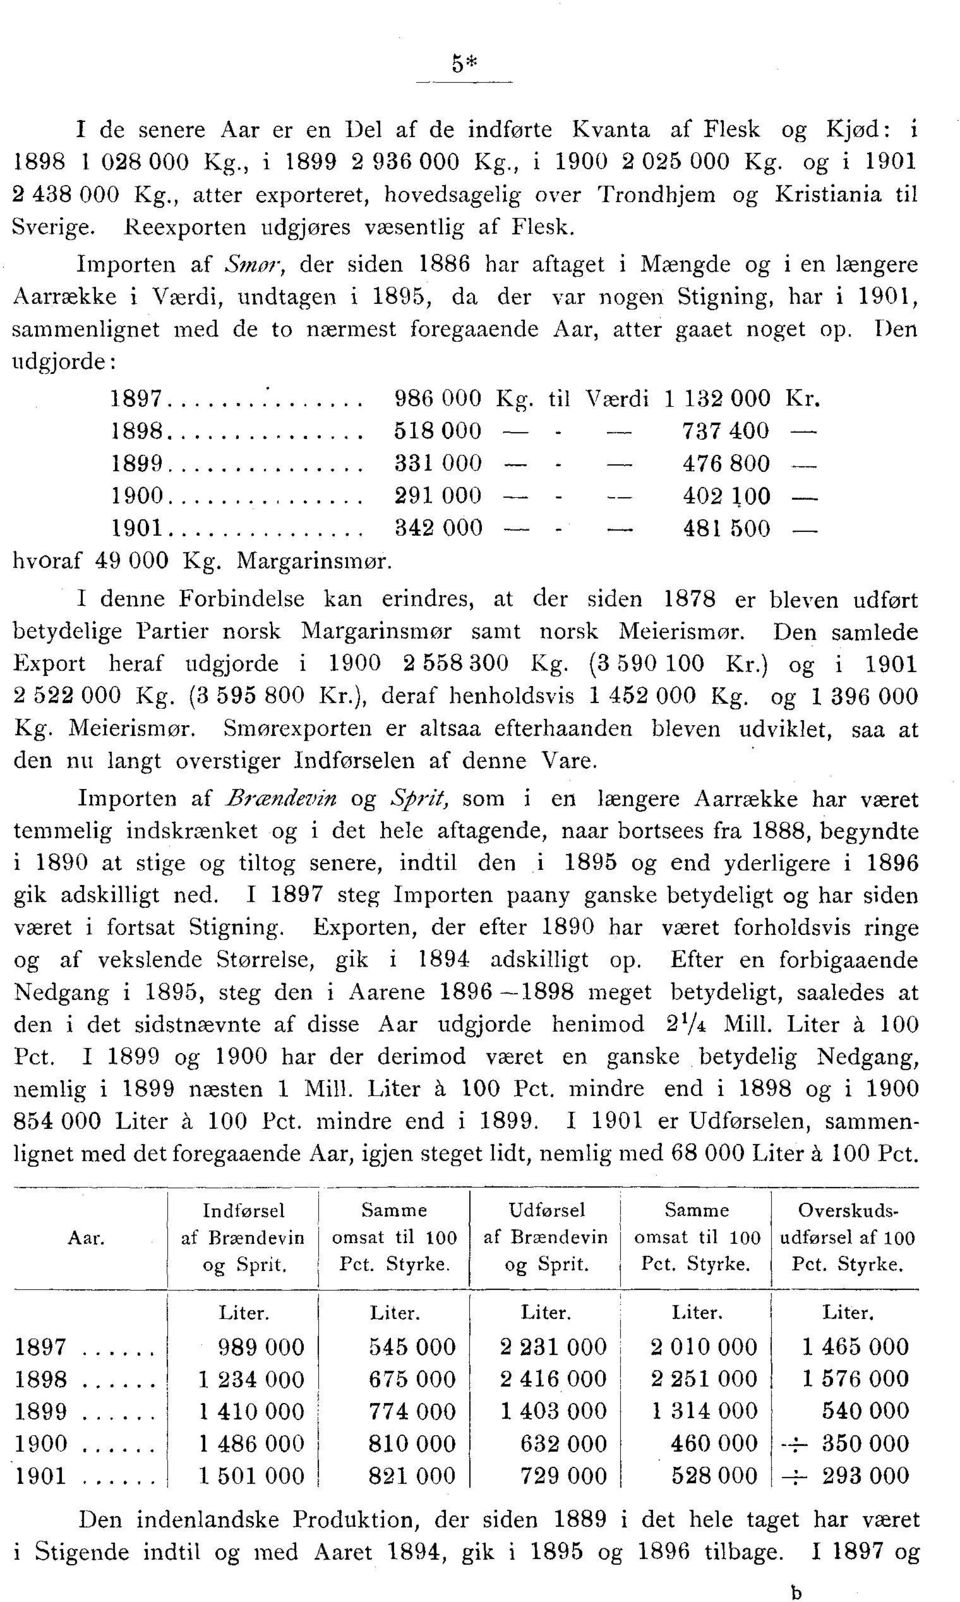 Importen af Smor, der siden 1886 har aftaget i Mængde og i en længere Aarraekke i Værdi, undtagen i 1895, da der var nogen Stigning, har i 1901, sammenlignet med de to nærmest foregaaende Aar, atter